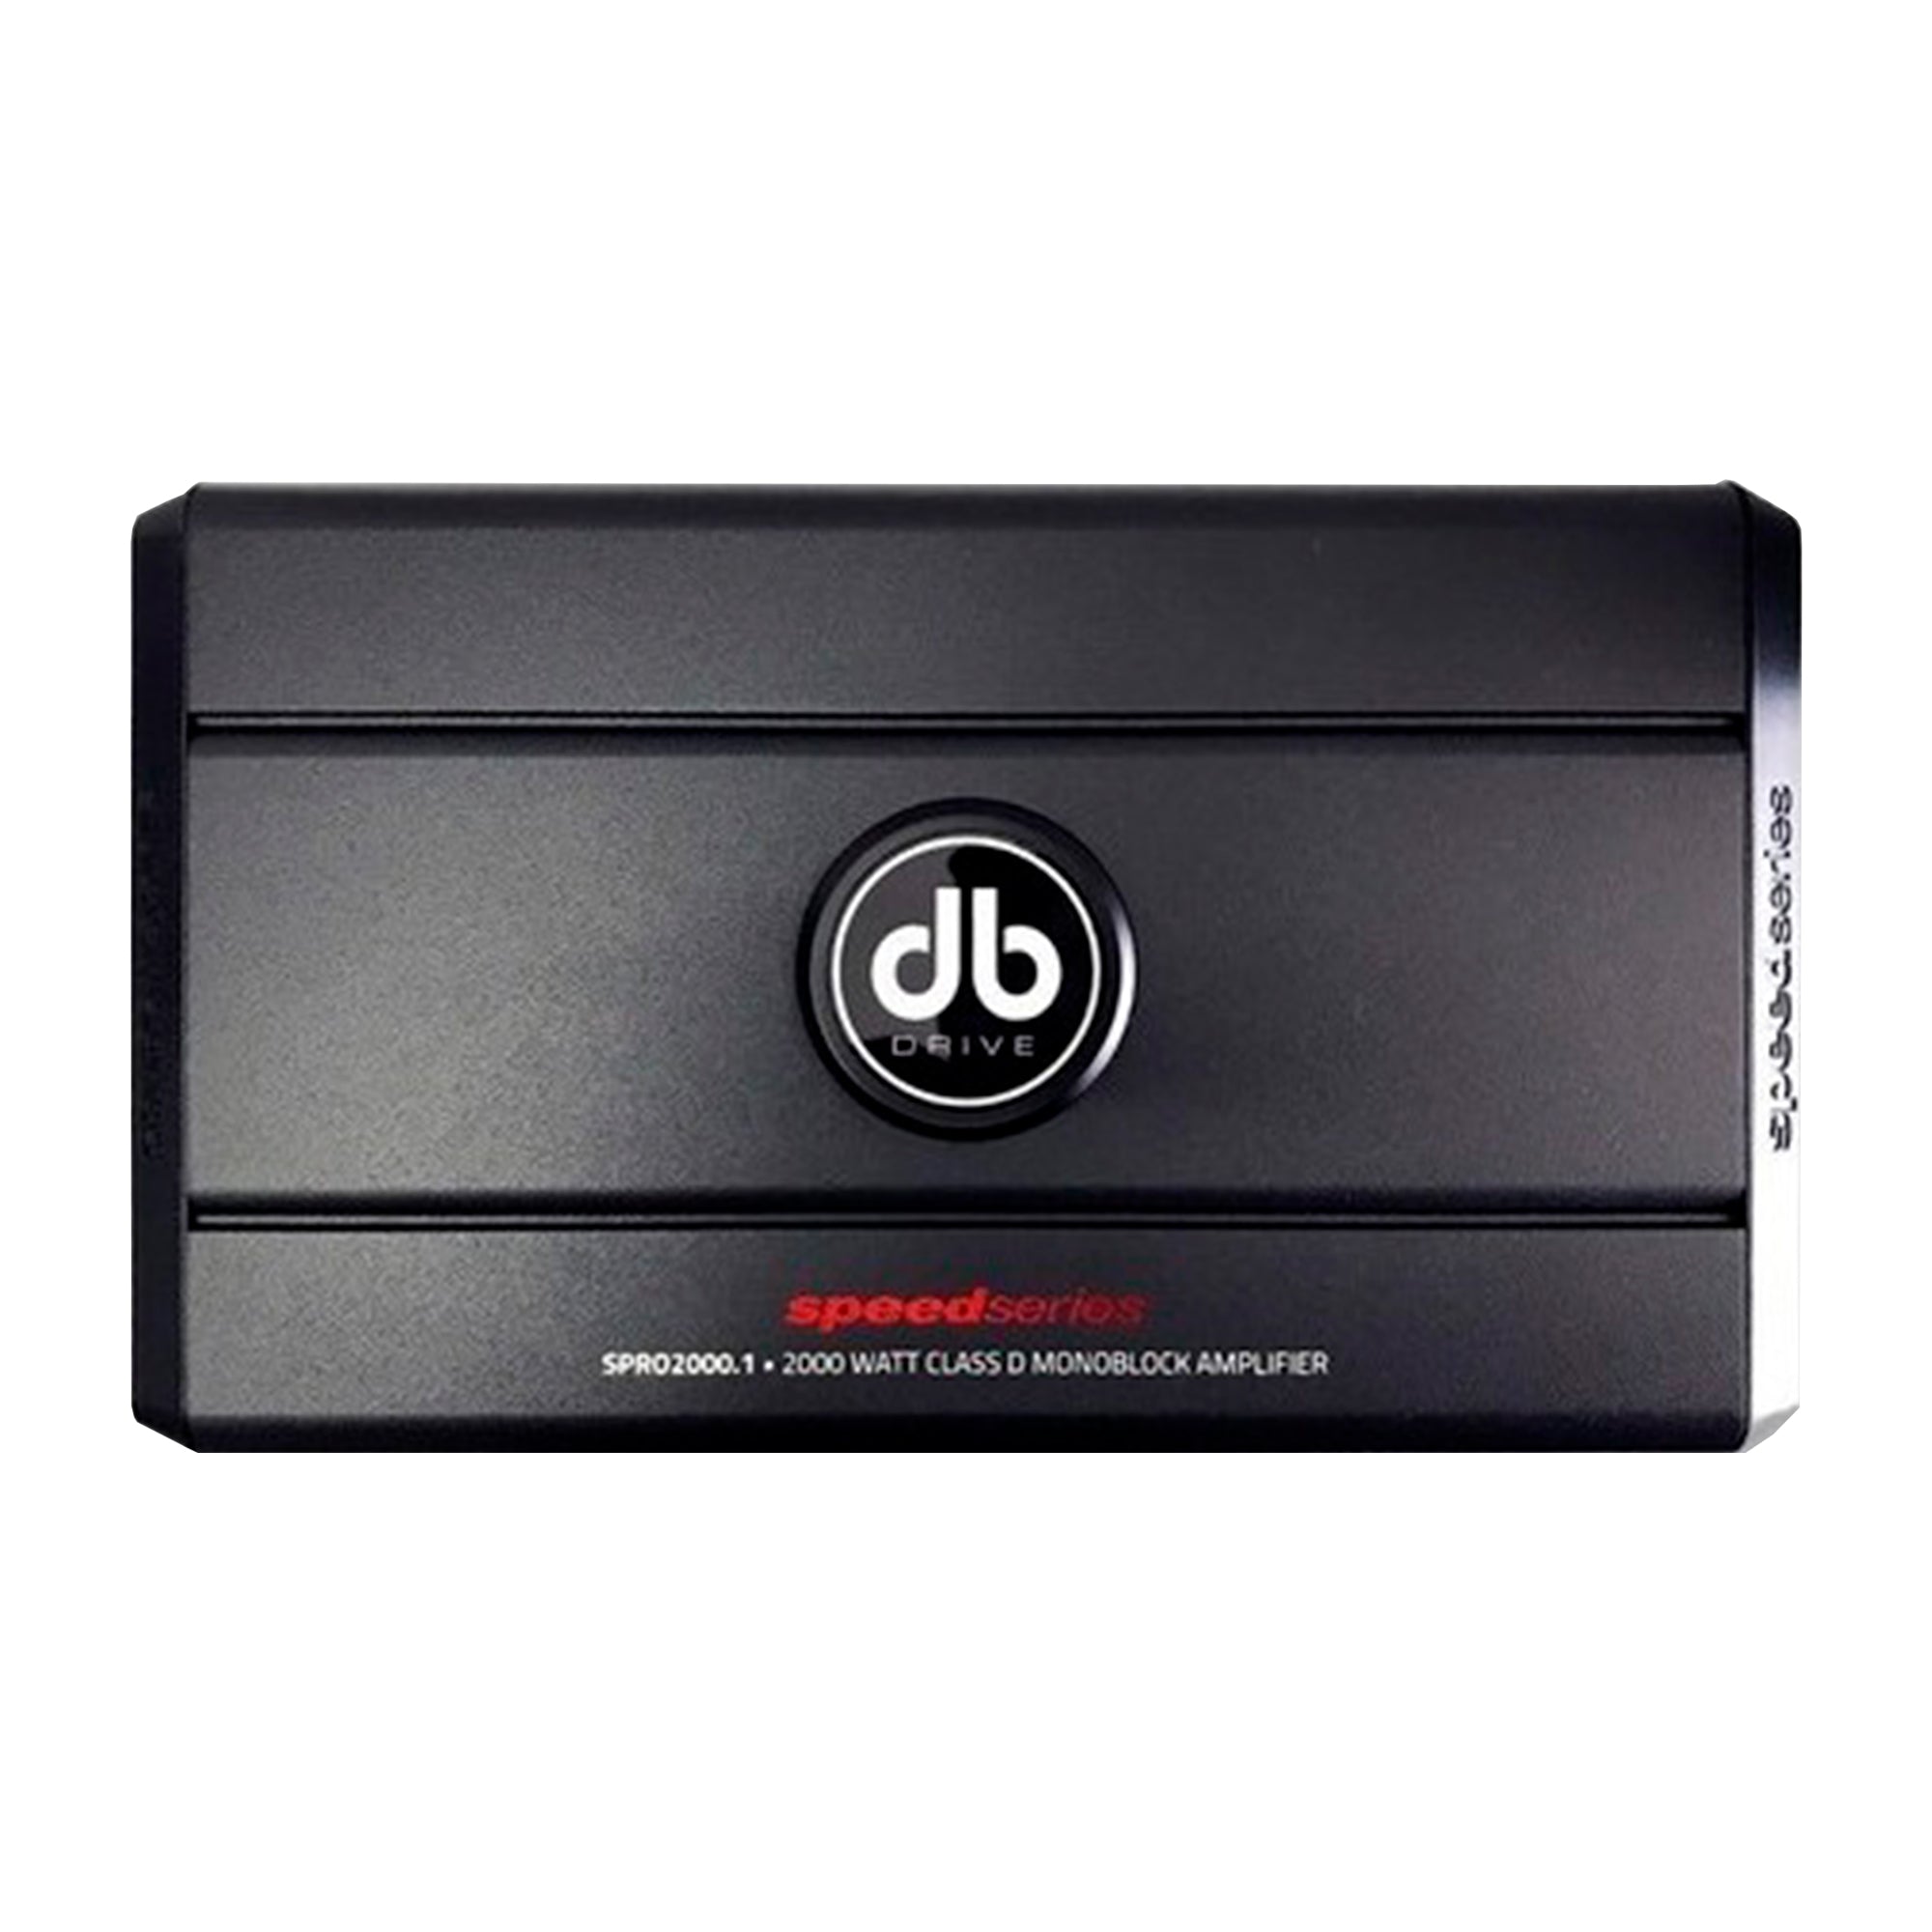 Amplificador Monoblock DB Drive SPRO2000.1 2000 Watts Clase D con Controlador de Bajos